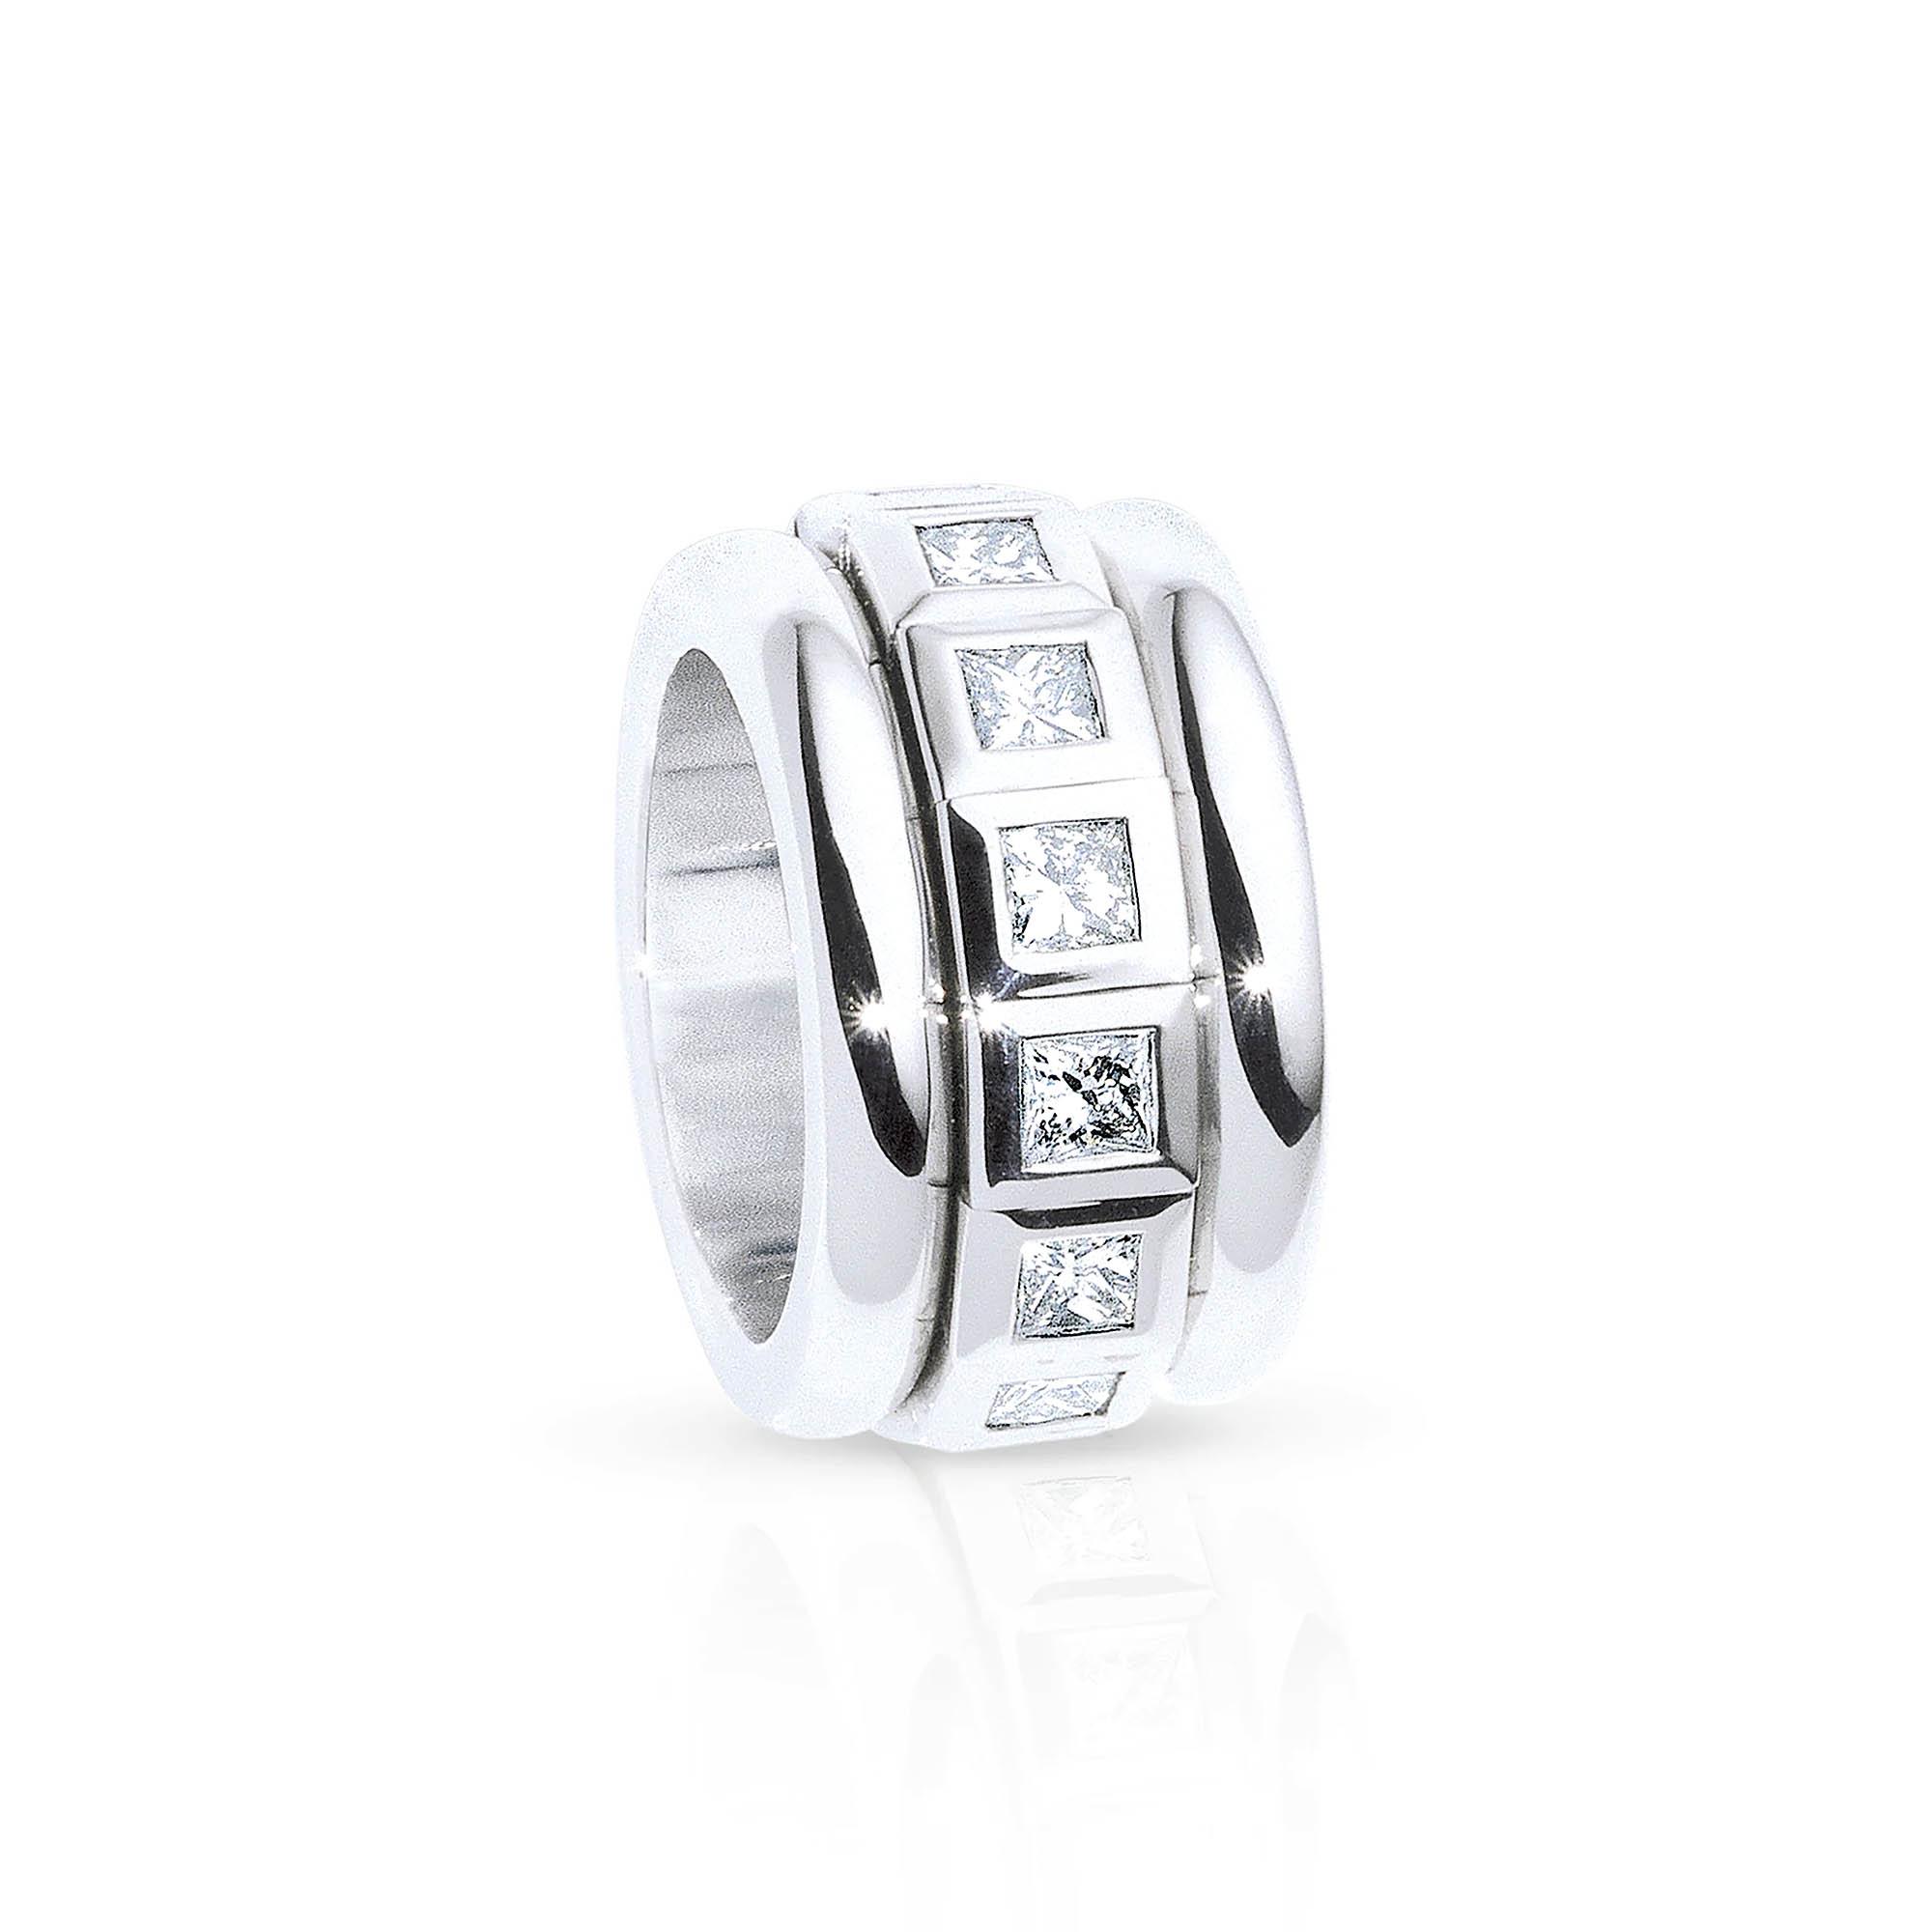 Tamara Comolli CURRICULUM VITAE Ring Weiße Diamanten (Ref: R-CV77-14-PrL-wg)